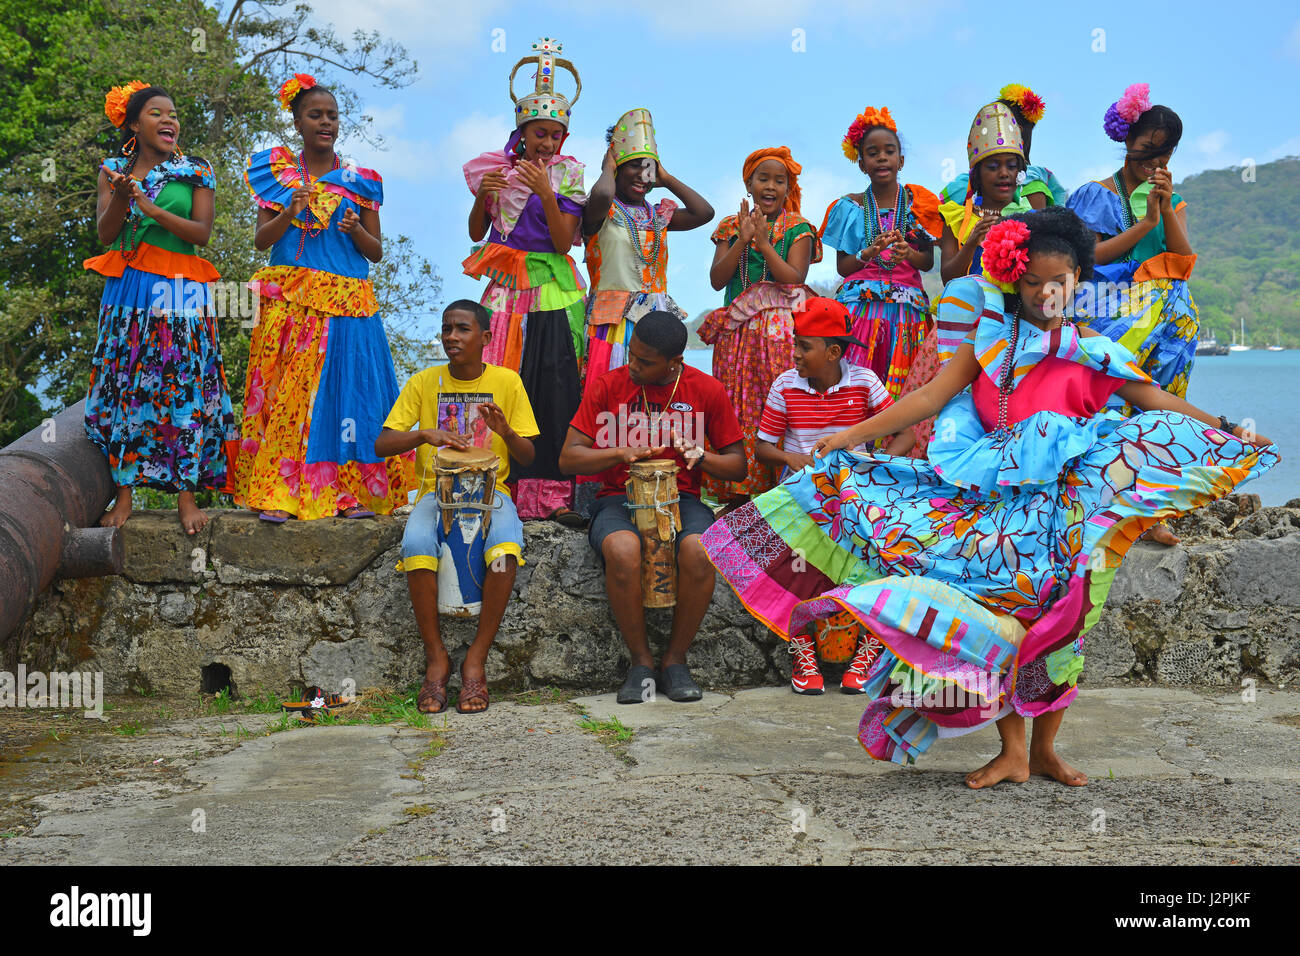 Traditionelle Kongo Tanz Performance innerhalb der spanischen Festung von Santiago in Portobelo, Panama. Die panamasche Tänzer tragen traditionelle Kleidung. Stockfoto